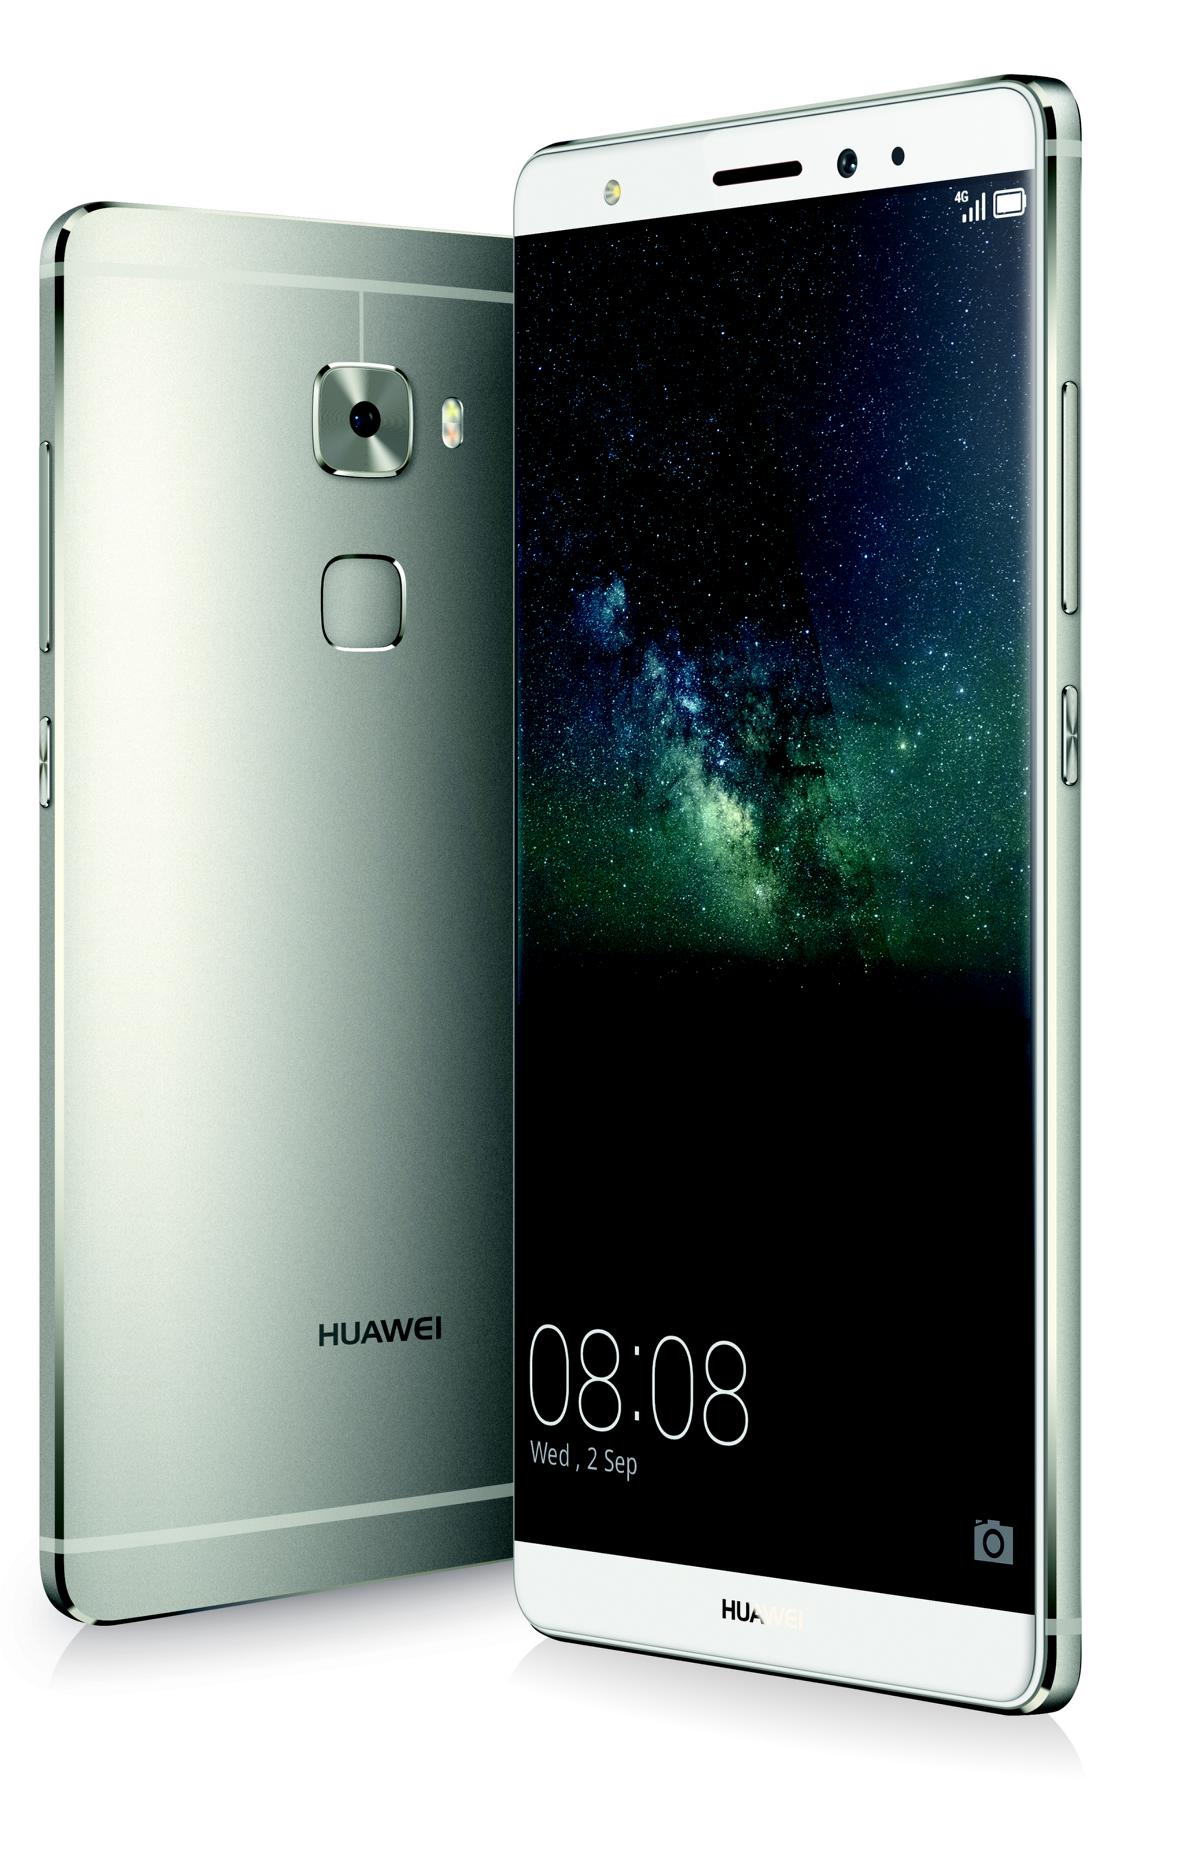 Huawei Mate S Android 6.0 Marshmallow Update verfügbar